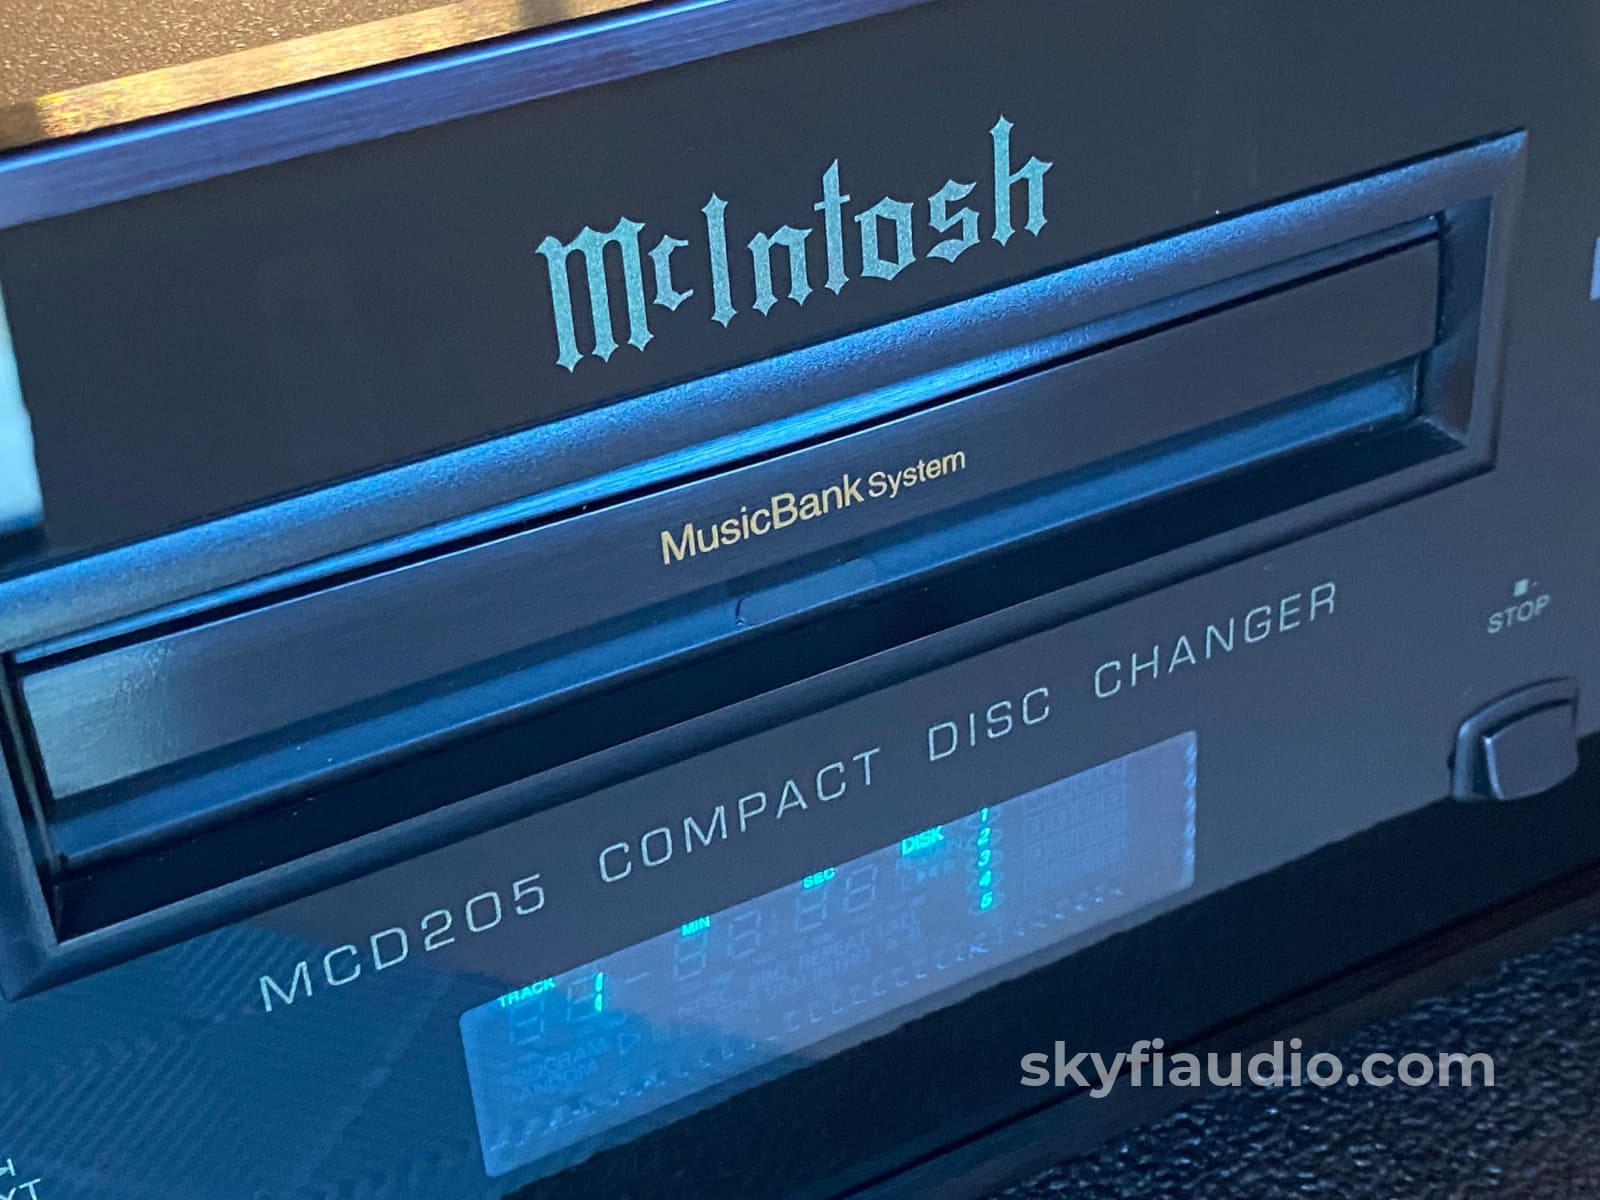 Mcintosh Mcd205 Five Disc Cd Changer + Digital